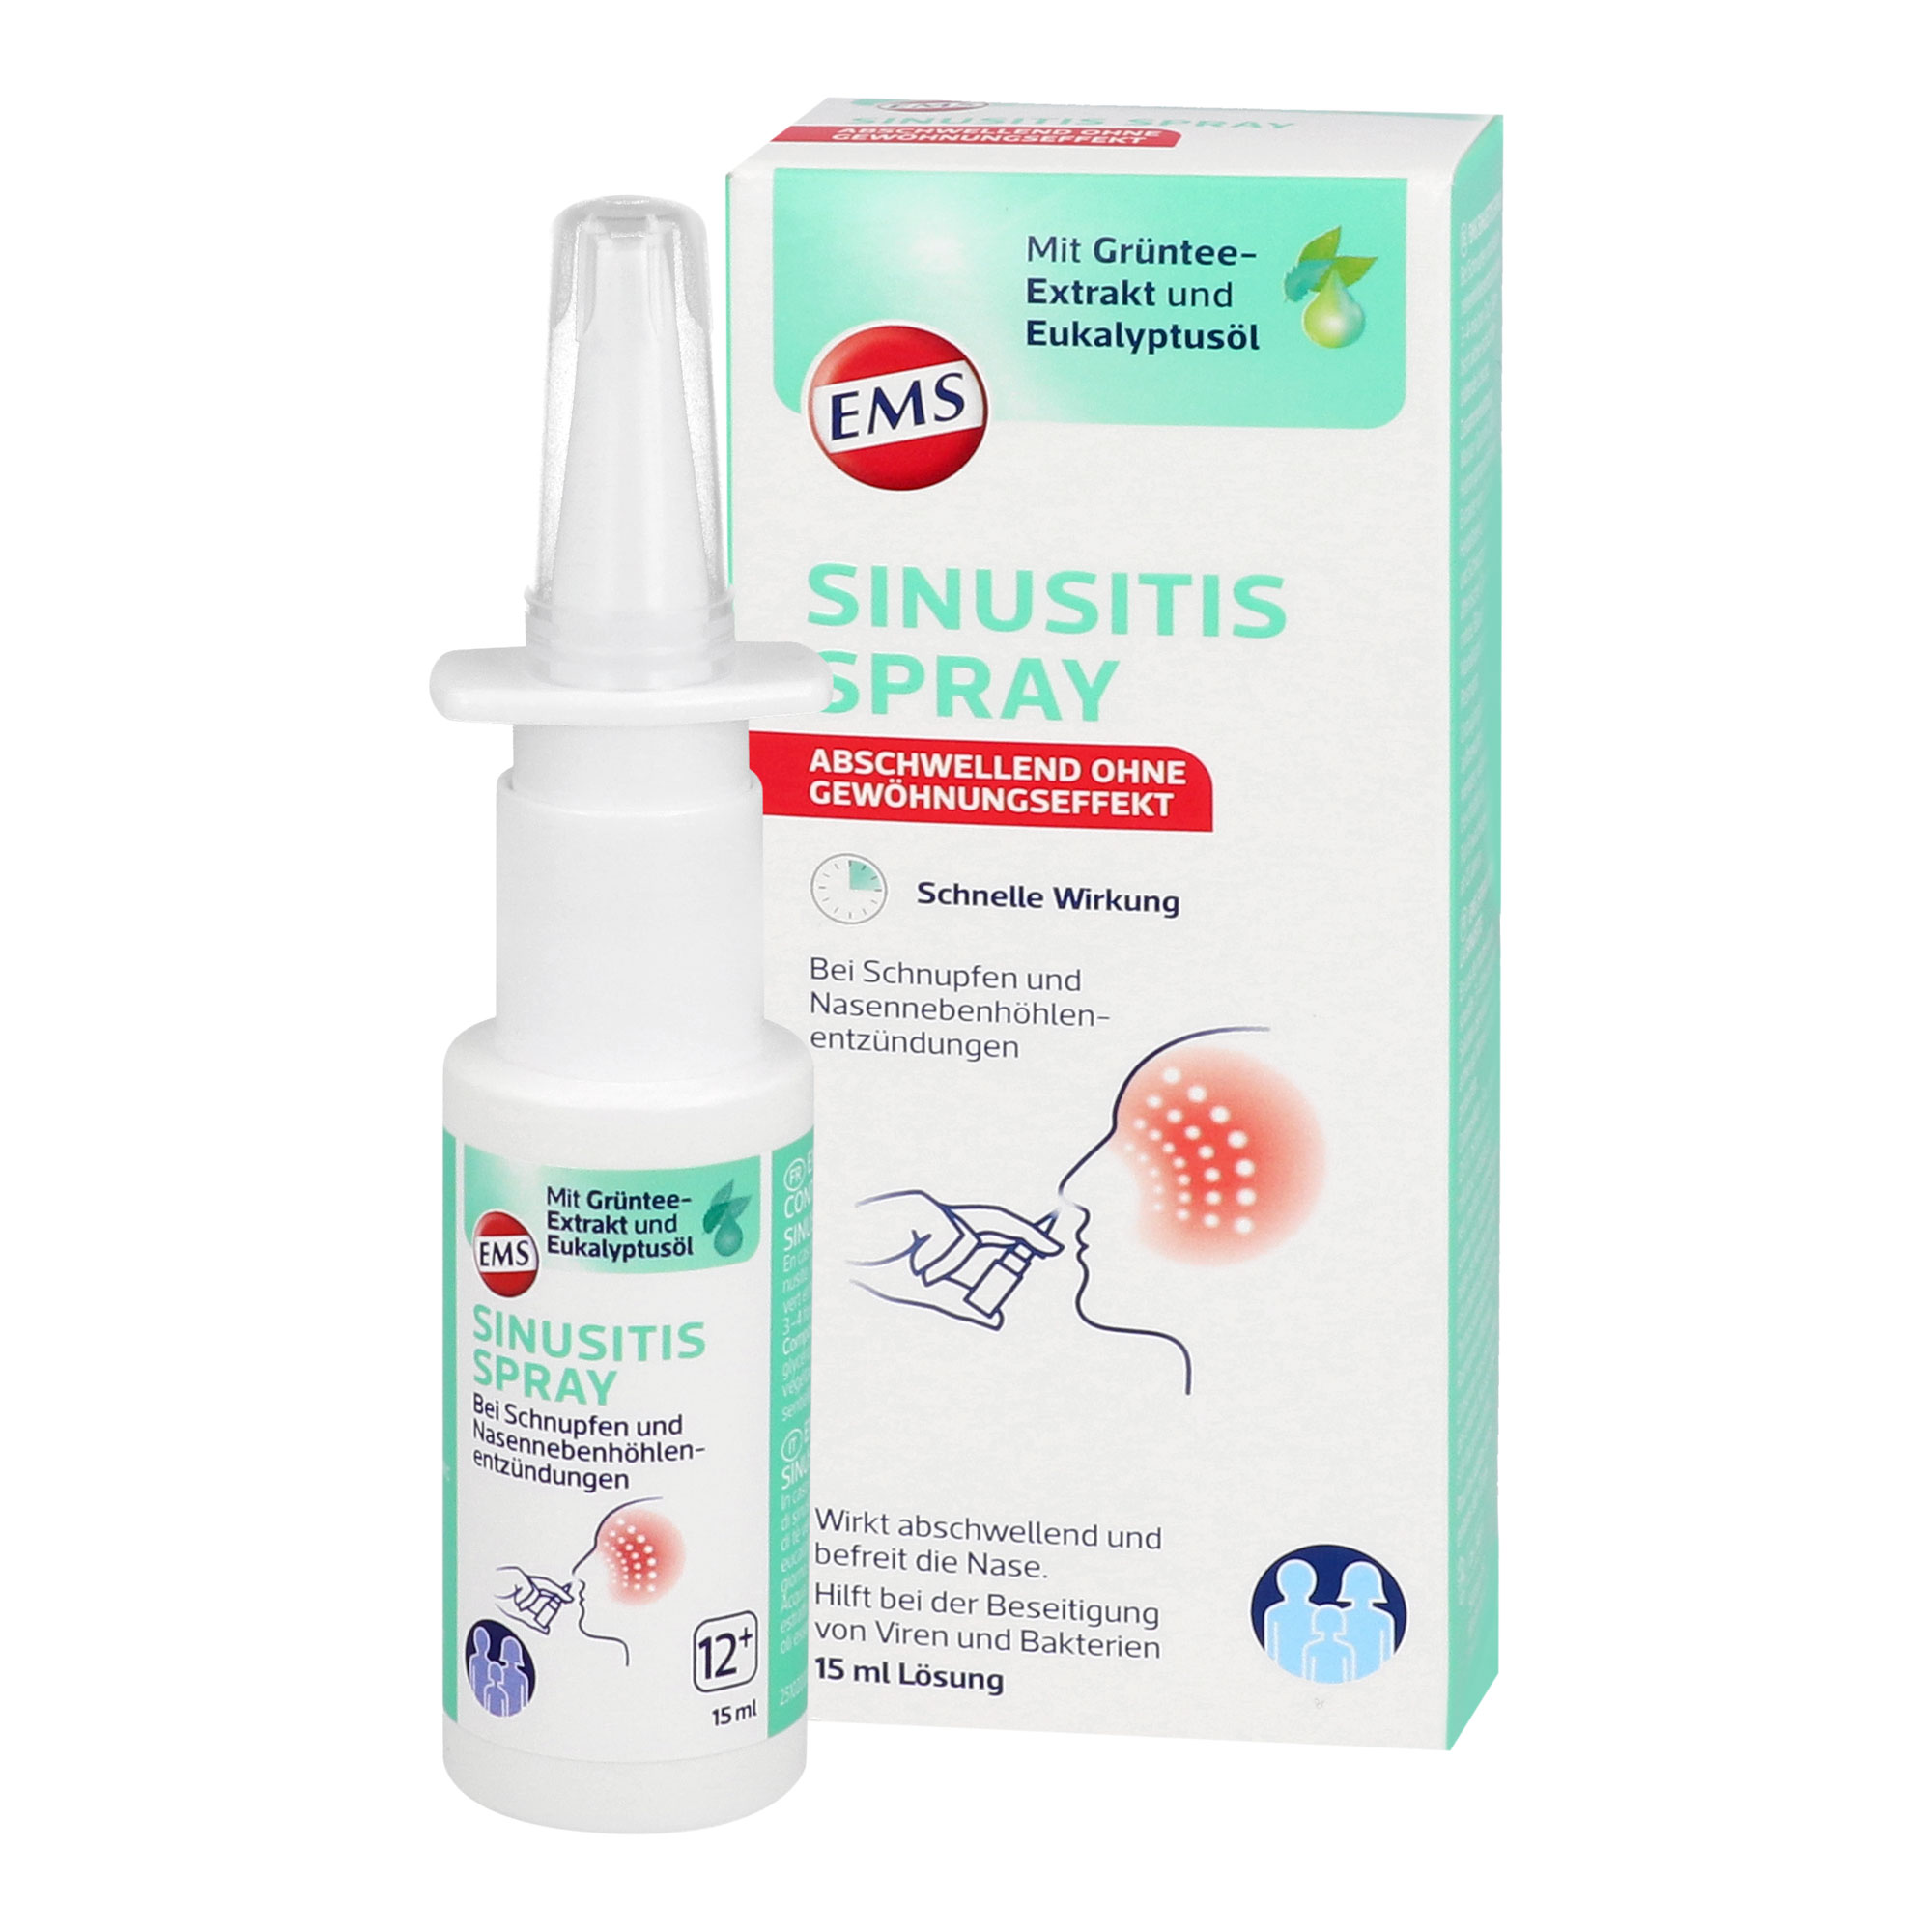 Nasenspray zur Abschwellung und Reinigung der Nasenschleimhaut von Viren und Bakterien bei Rhinitis (Schnupfen), sowie bei akuter und chronischer Sinusitis (Entzündungen der Nasennebenhöhlen).